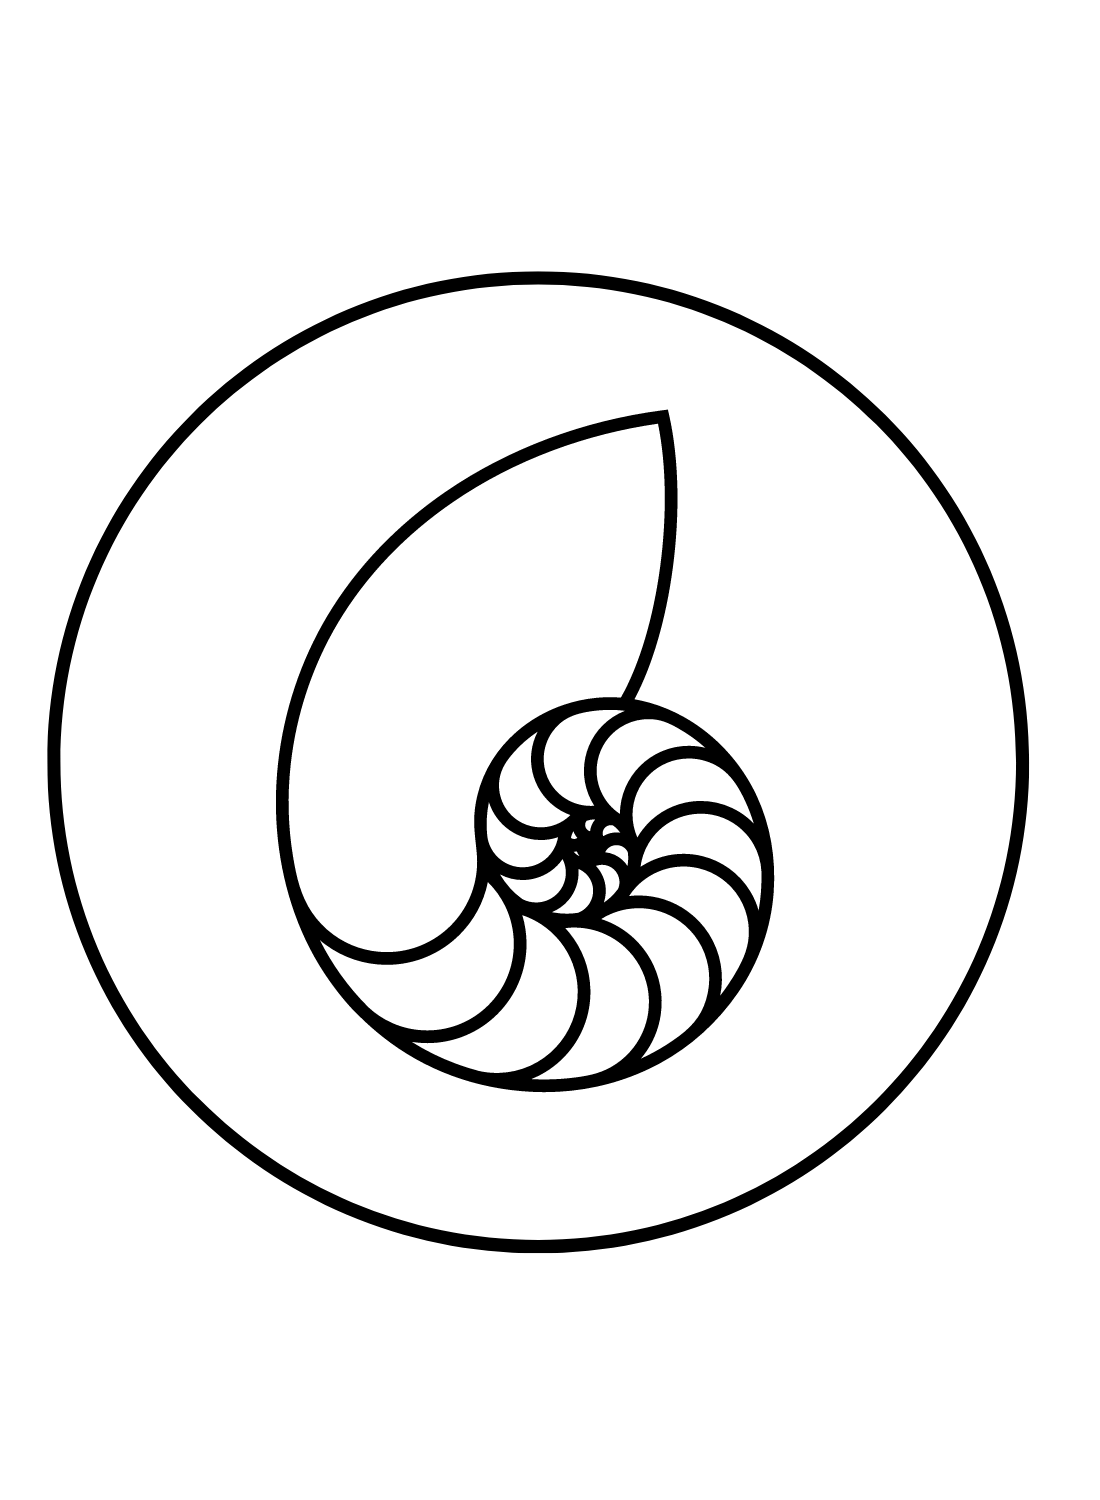 Nautilus Shell from Nautilus